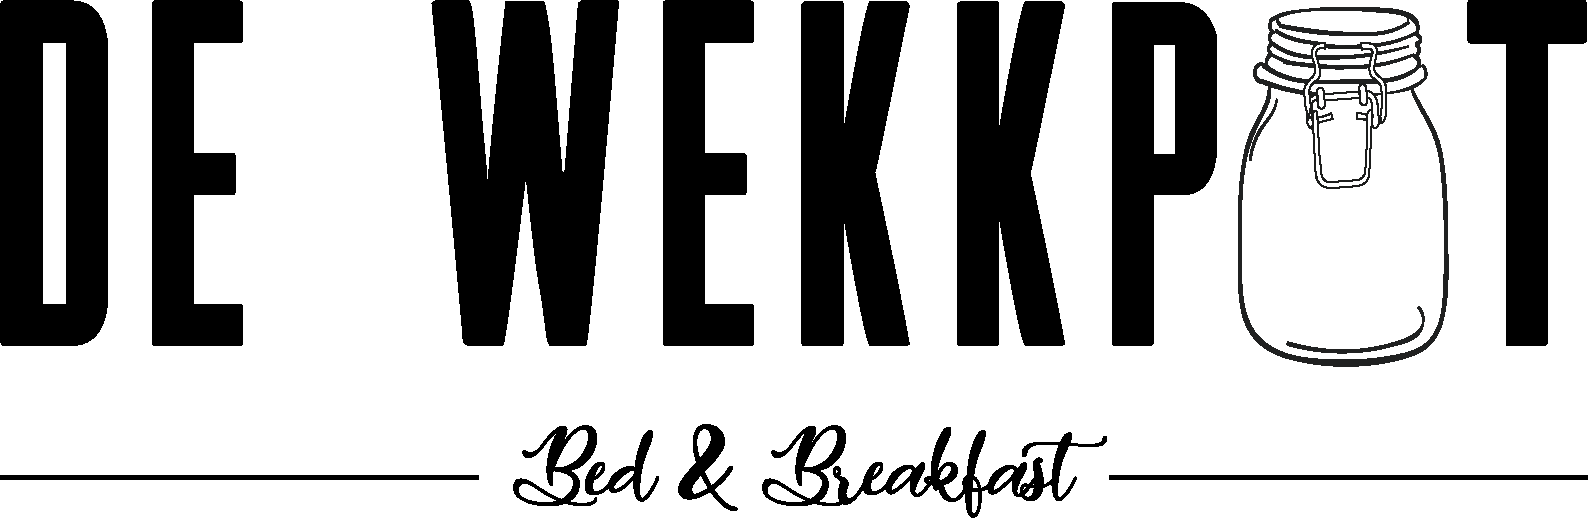 dewekkpot logo